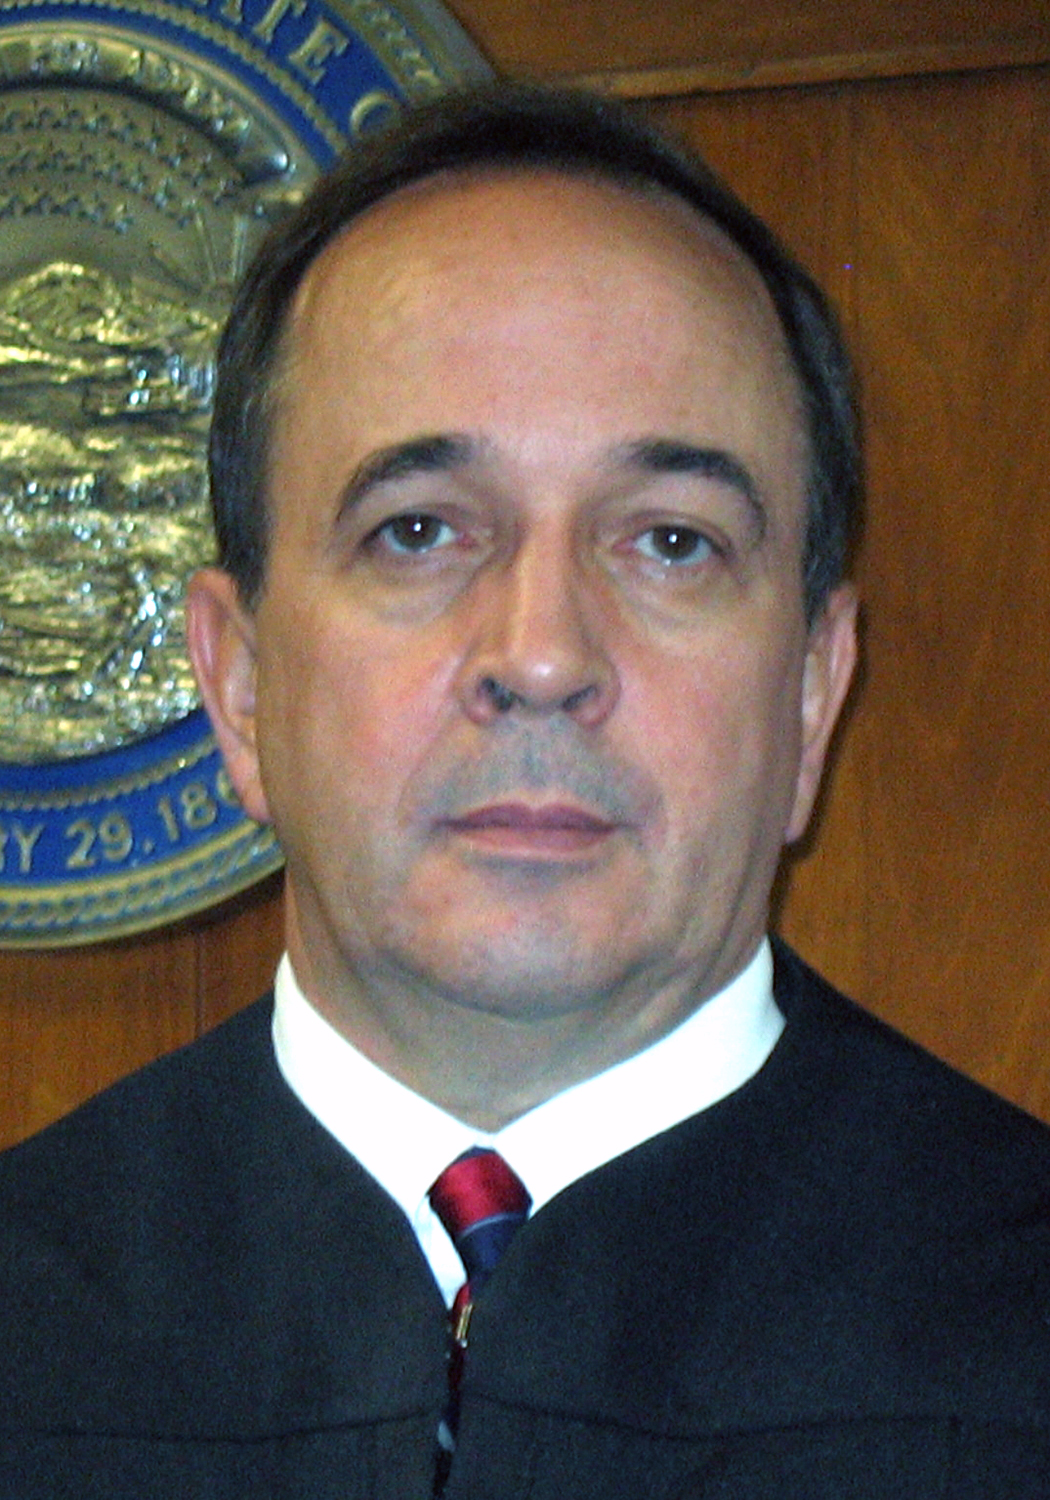 District Judge Jeffrey Elder